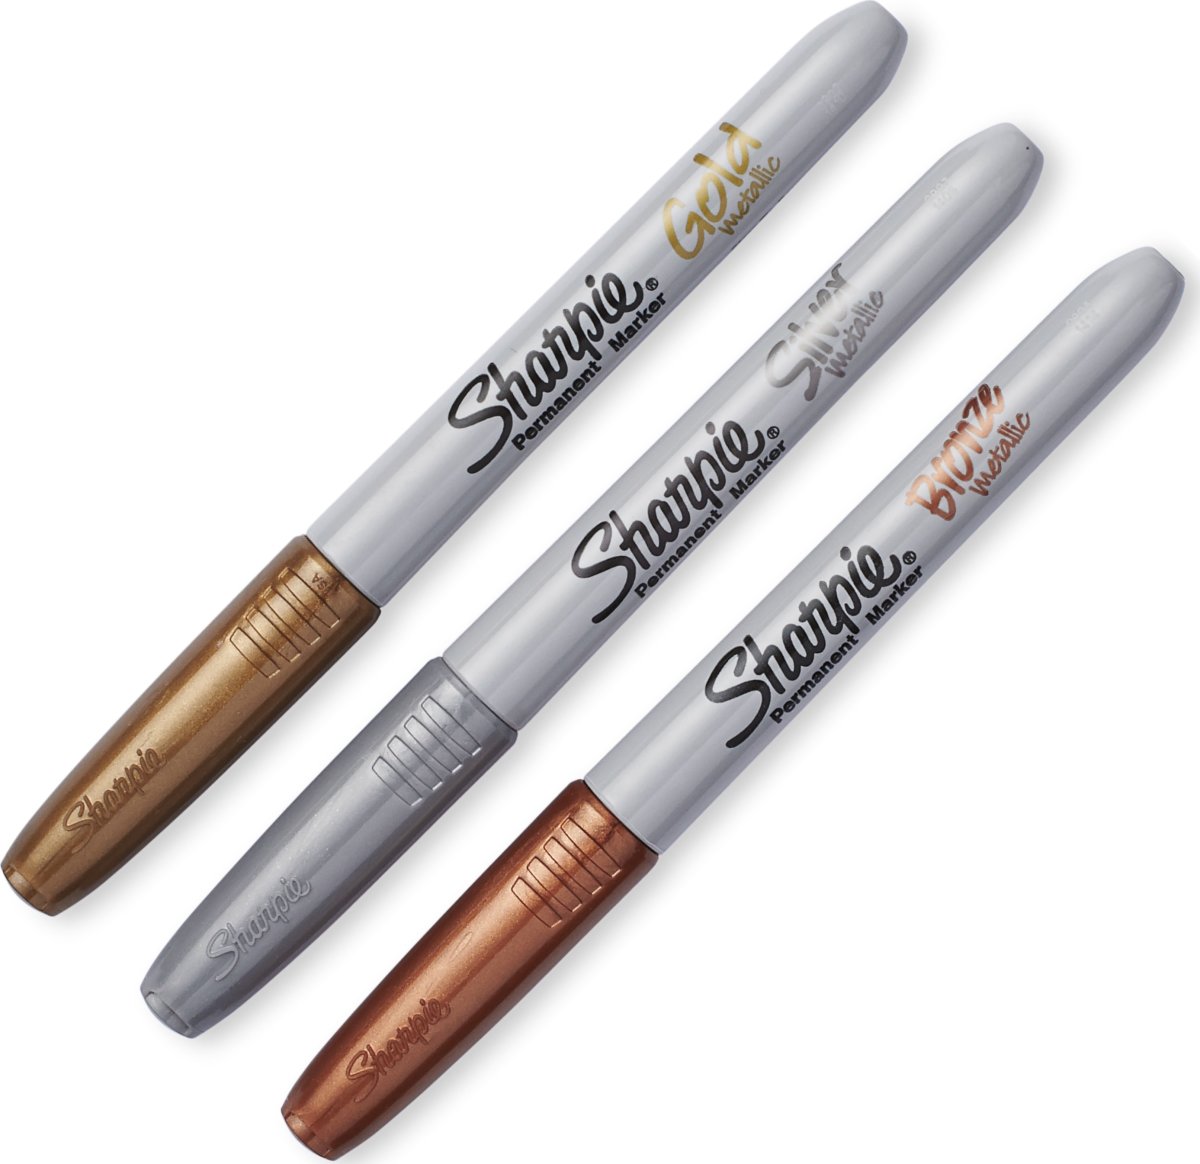 Sharpie Permanent Marker | F | Guld, sølv, bronze